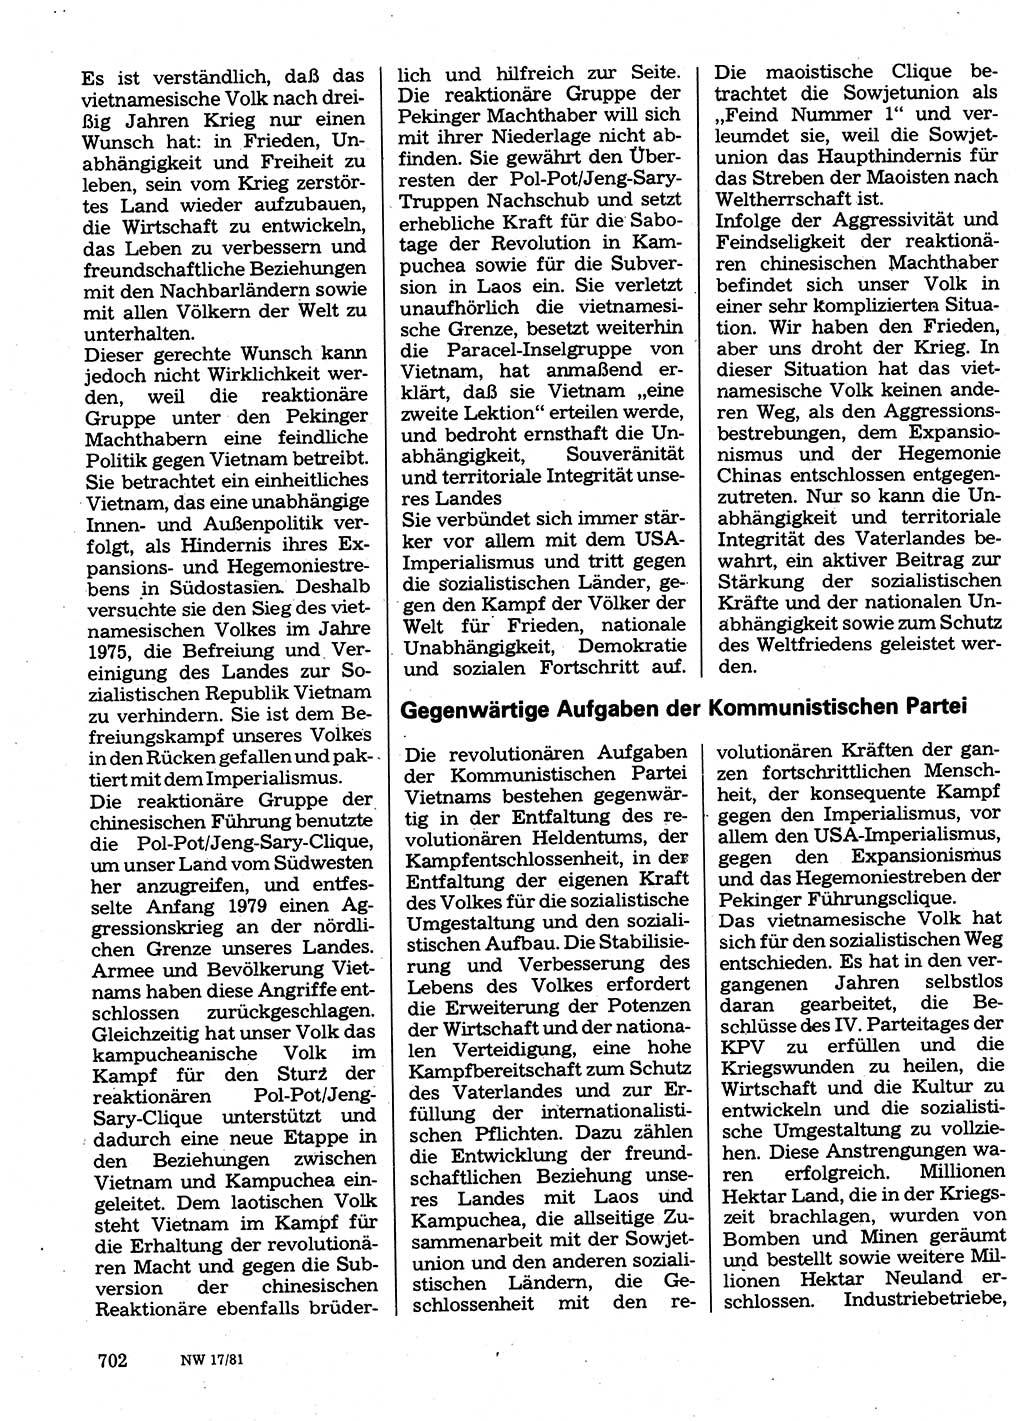 Neuer Weg (NW), Organ des Zentralkomitees (ZK) der SED (Sozialistische Einheitspartei Deutschlands) für Fragen des Parteilebens, 36. Jahrgang [Deutsche Demokratische Republik (DDR)] 1981, Seite 702 (NW ZK SED DDR 1981, S. 702)